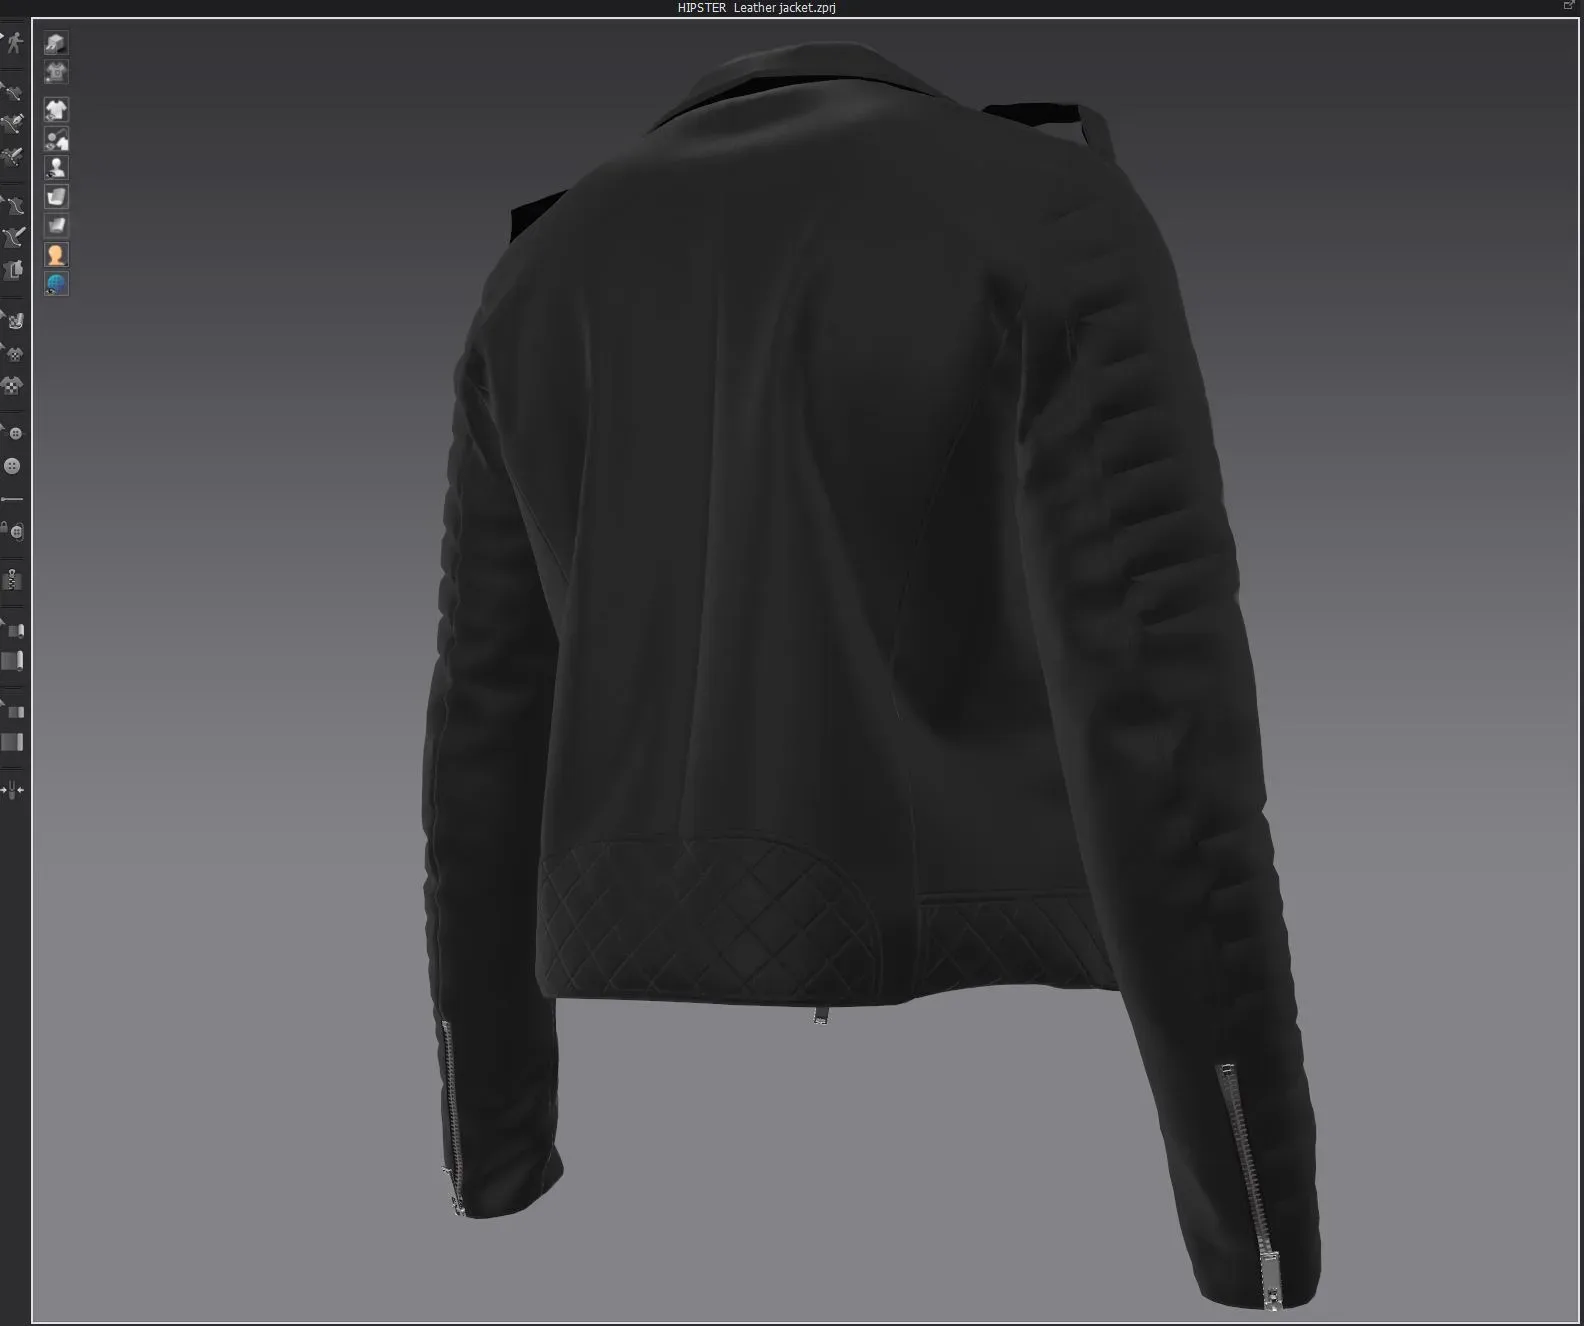 HIPSTER Leather jacket, marvelous designer,clo3d